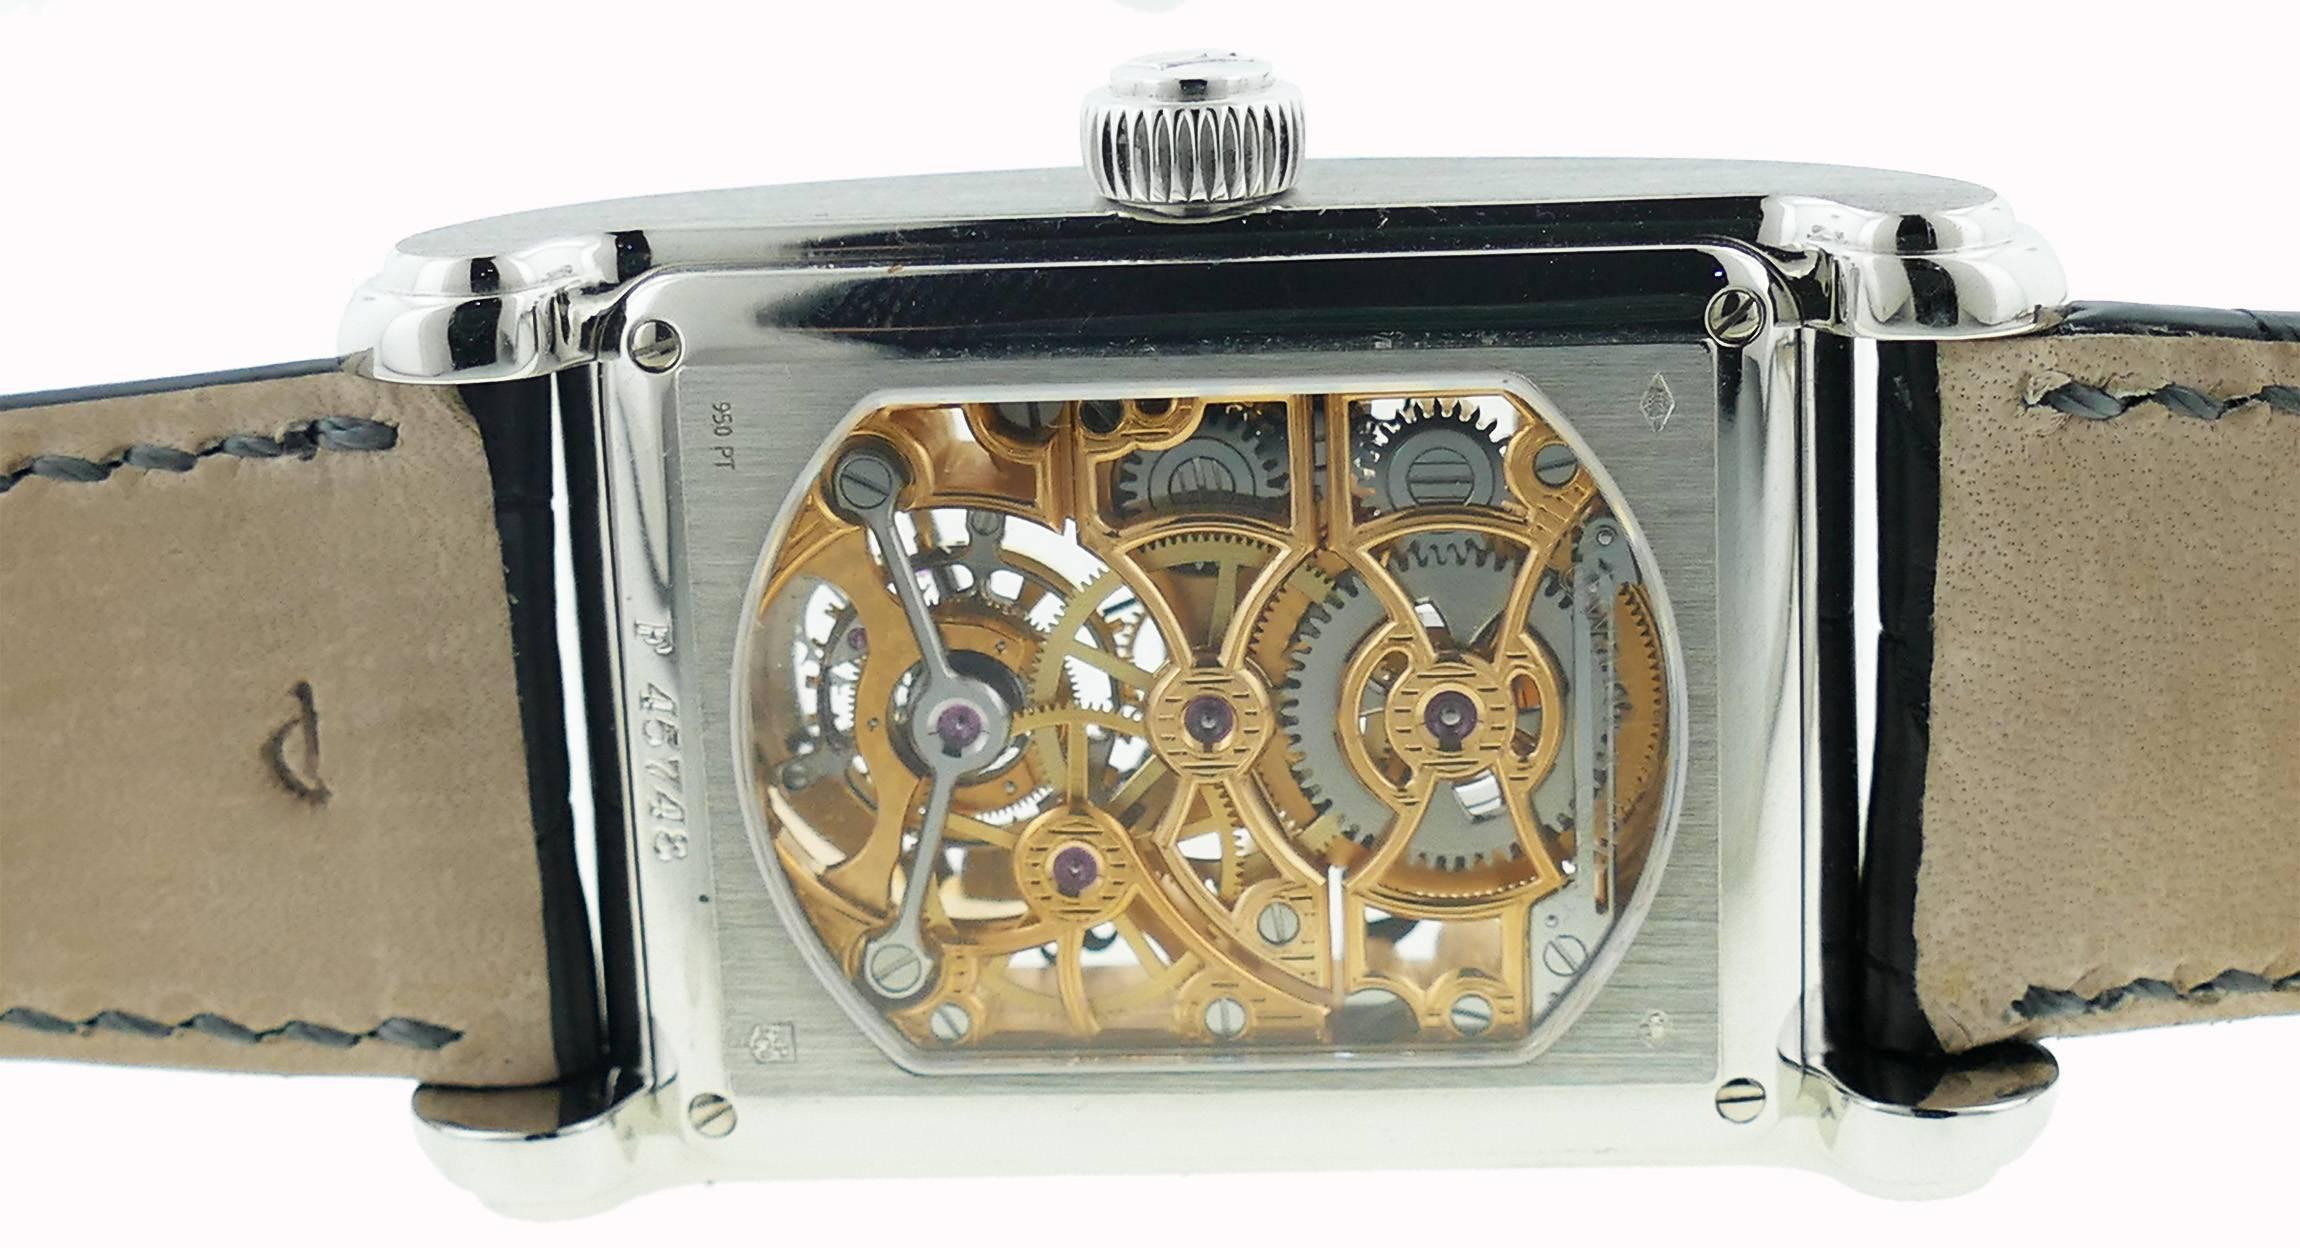  Audemars Piguet Edward Piguet Platinum Skeleton Dial Tourbillon Wristwatch  For Sale 1